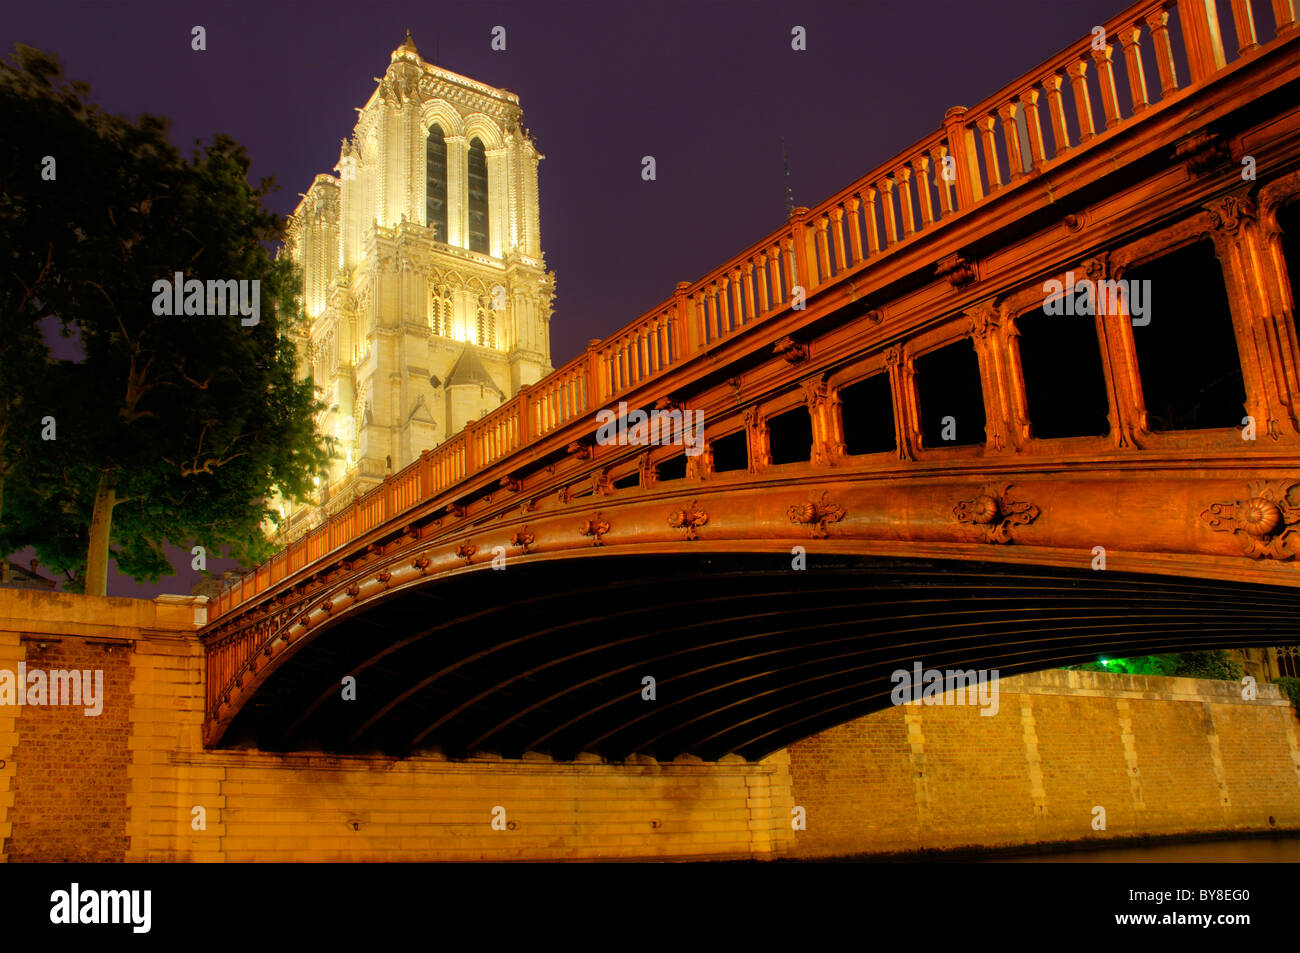 Notre Dame de Paris and Pont au Double in Paris at night Stock Photo